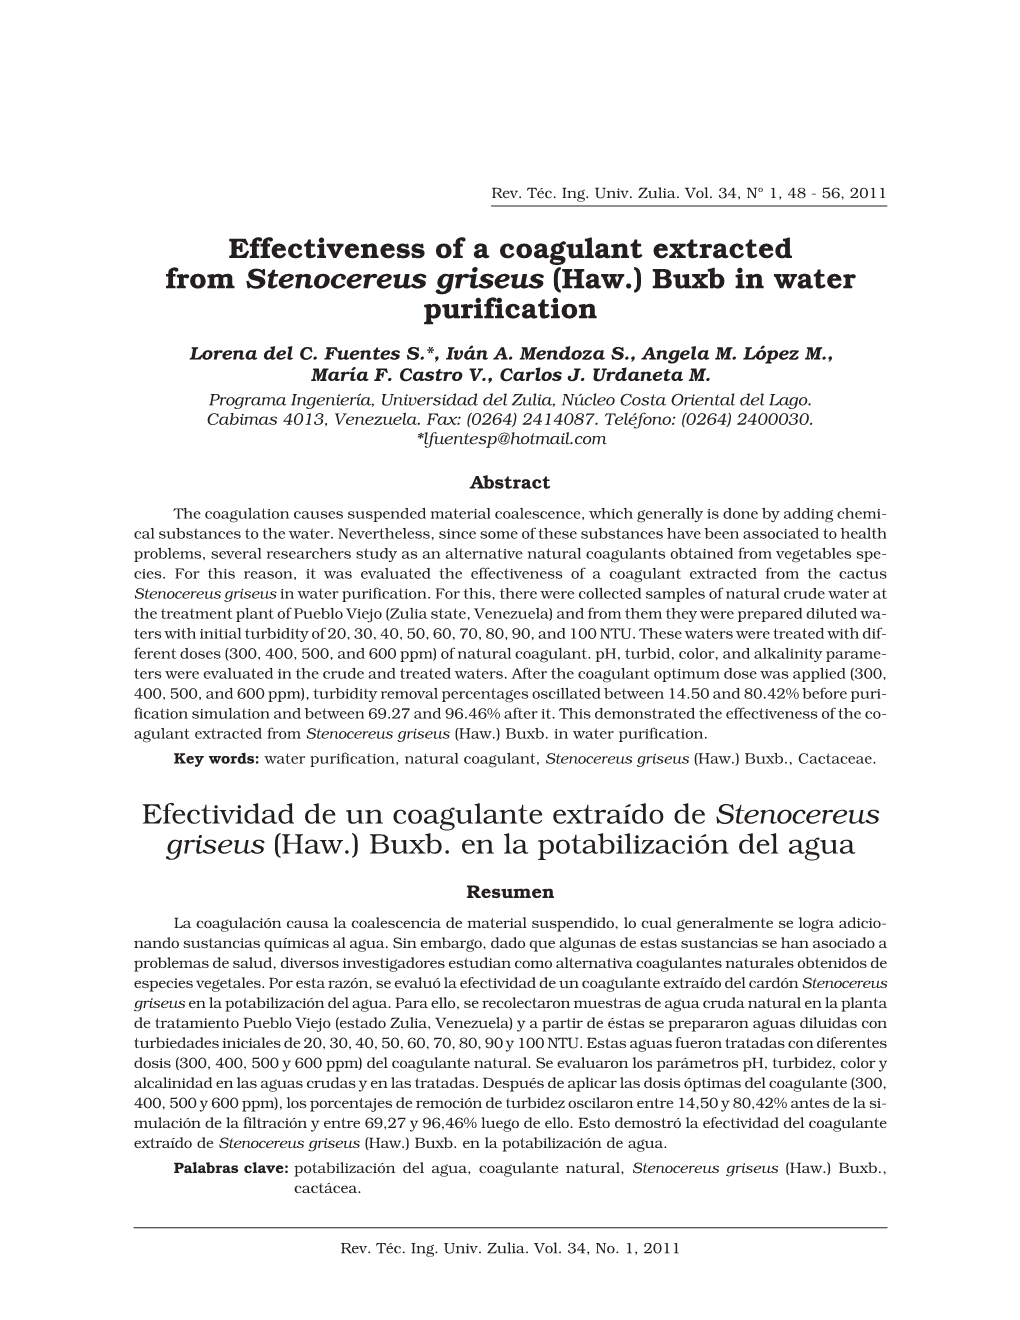 Efectividad De Un Coagulante Extraído De Stenocereus Griseus (Haw.) Buxb